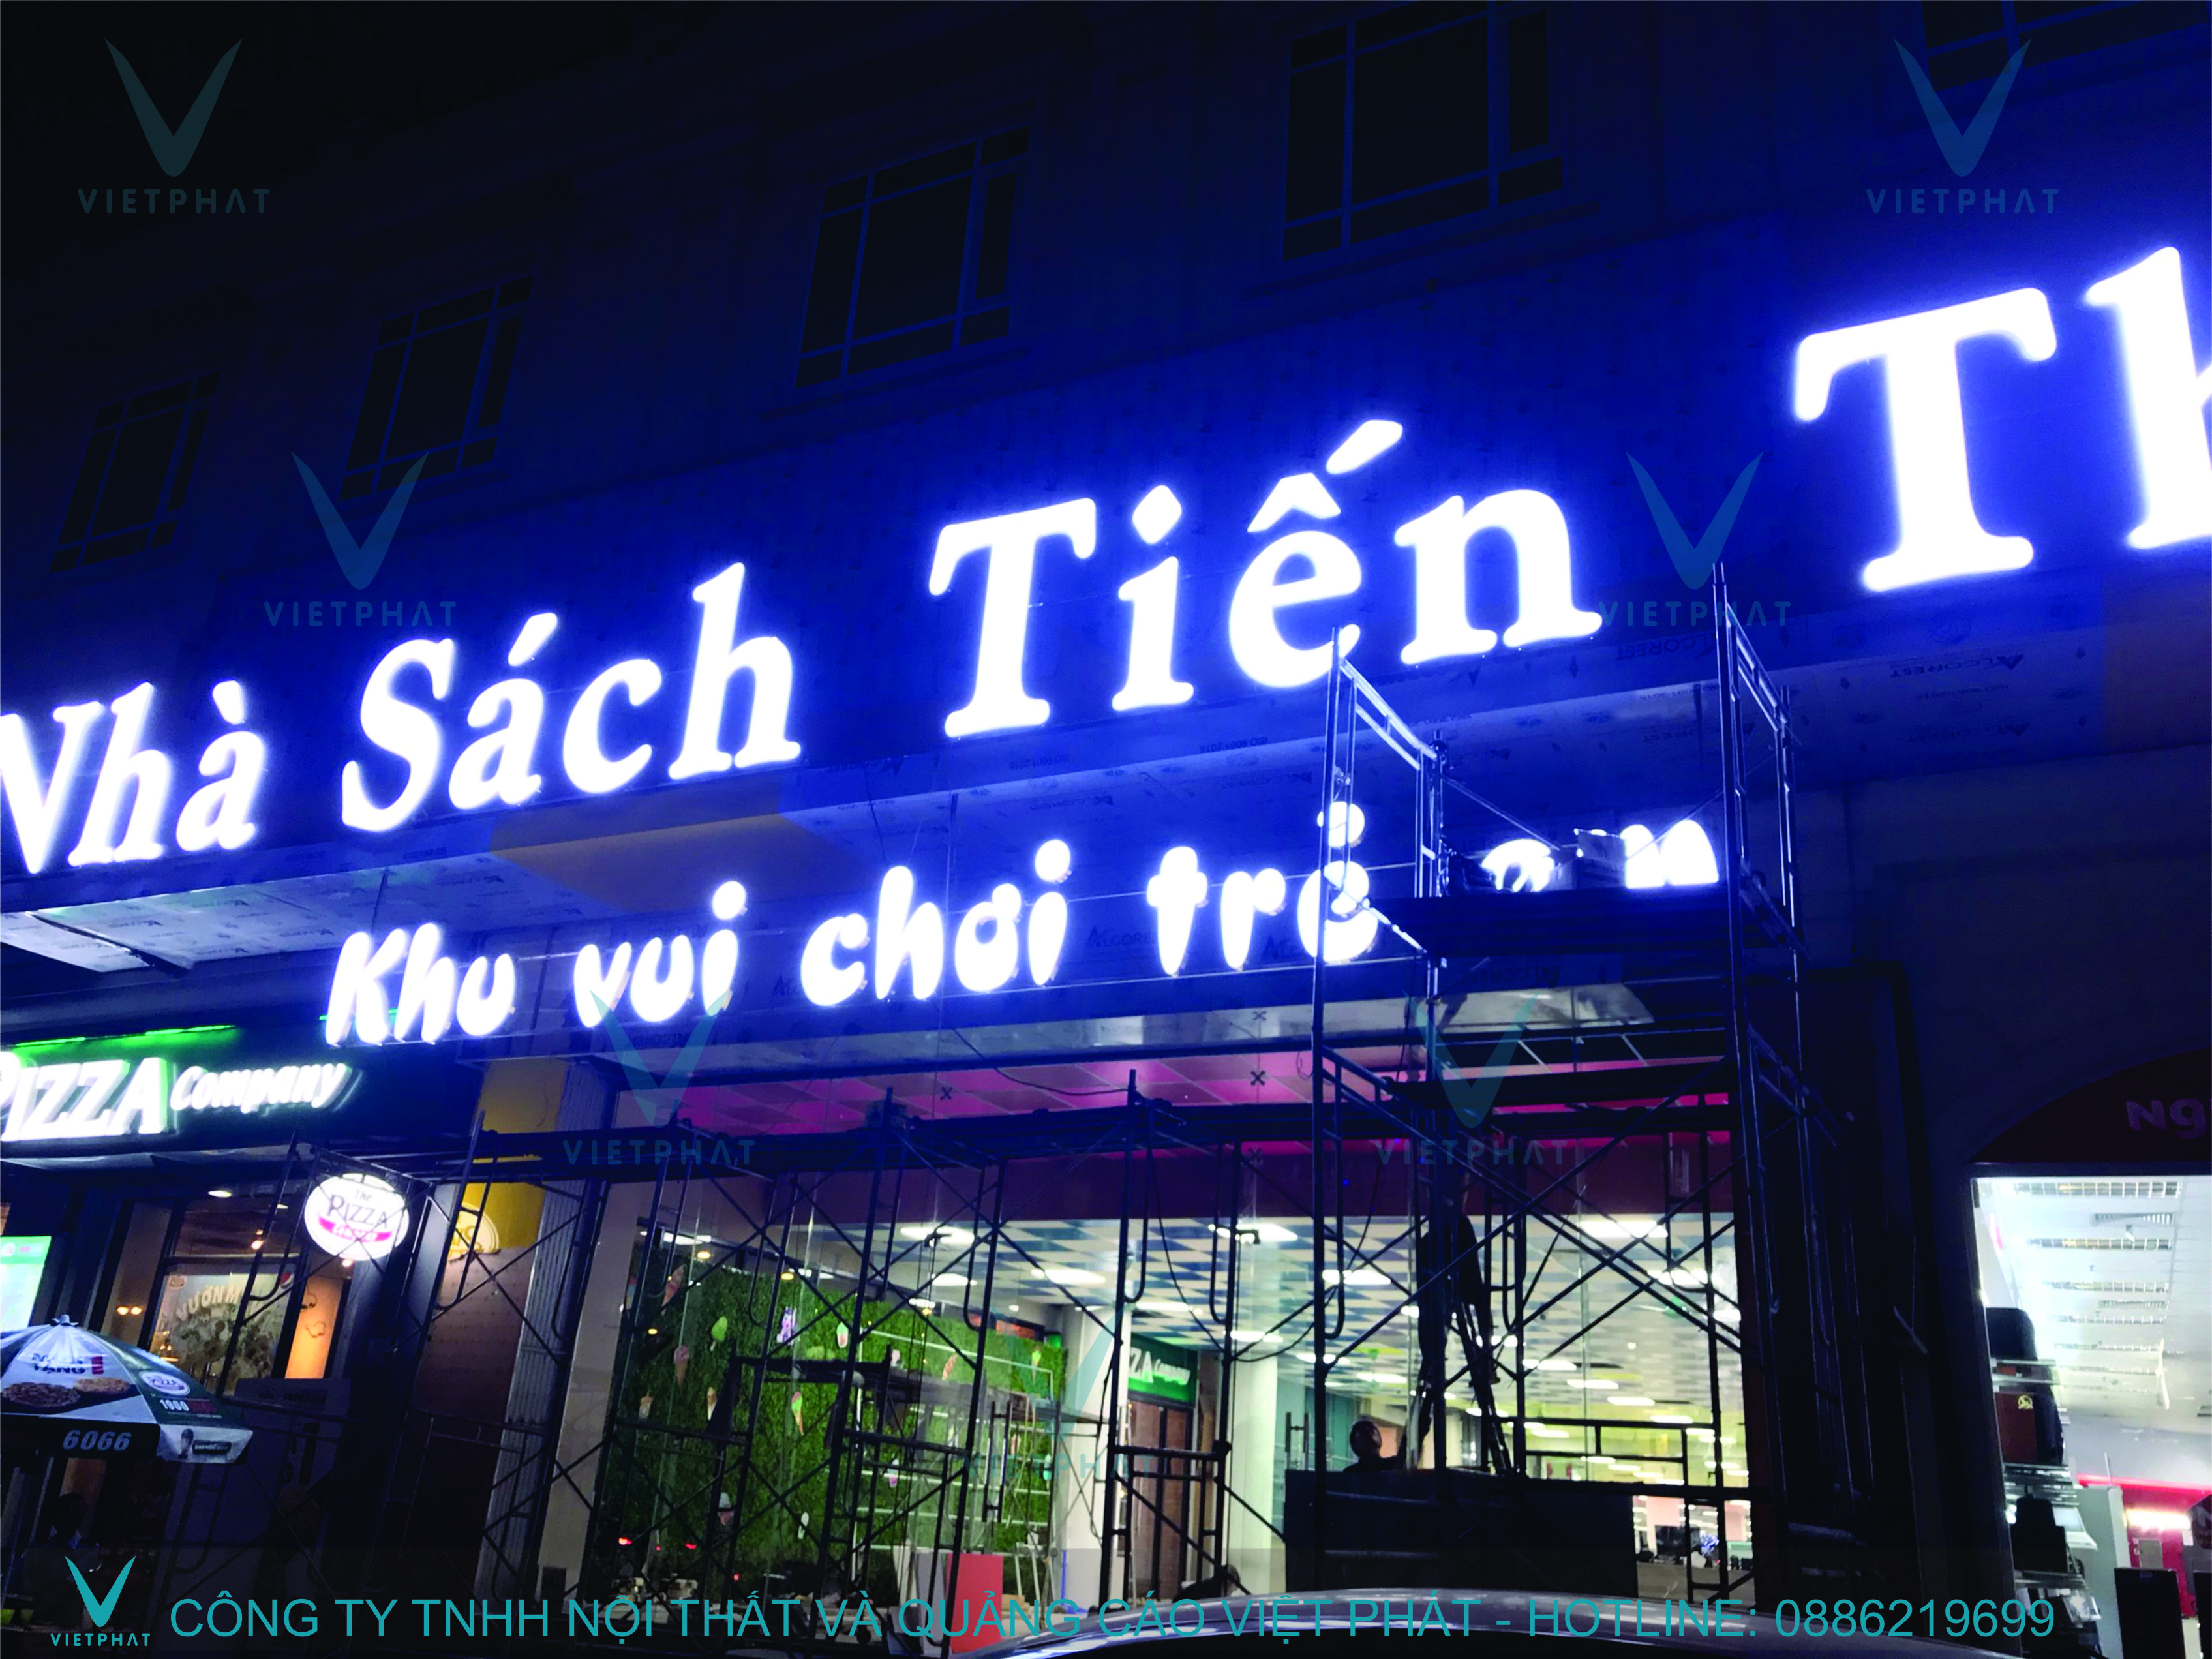 Làm biển quảng cáo giá rẻ tại Thành Phố Thanh Hoá - Quảng cáo Việt Phát